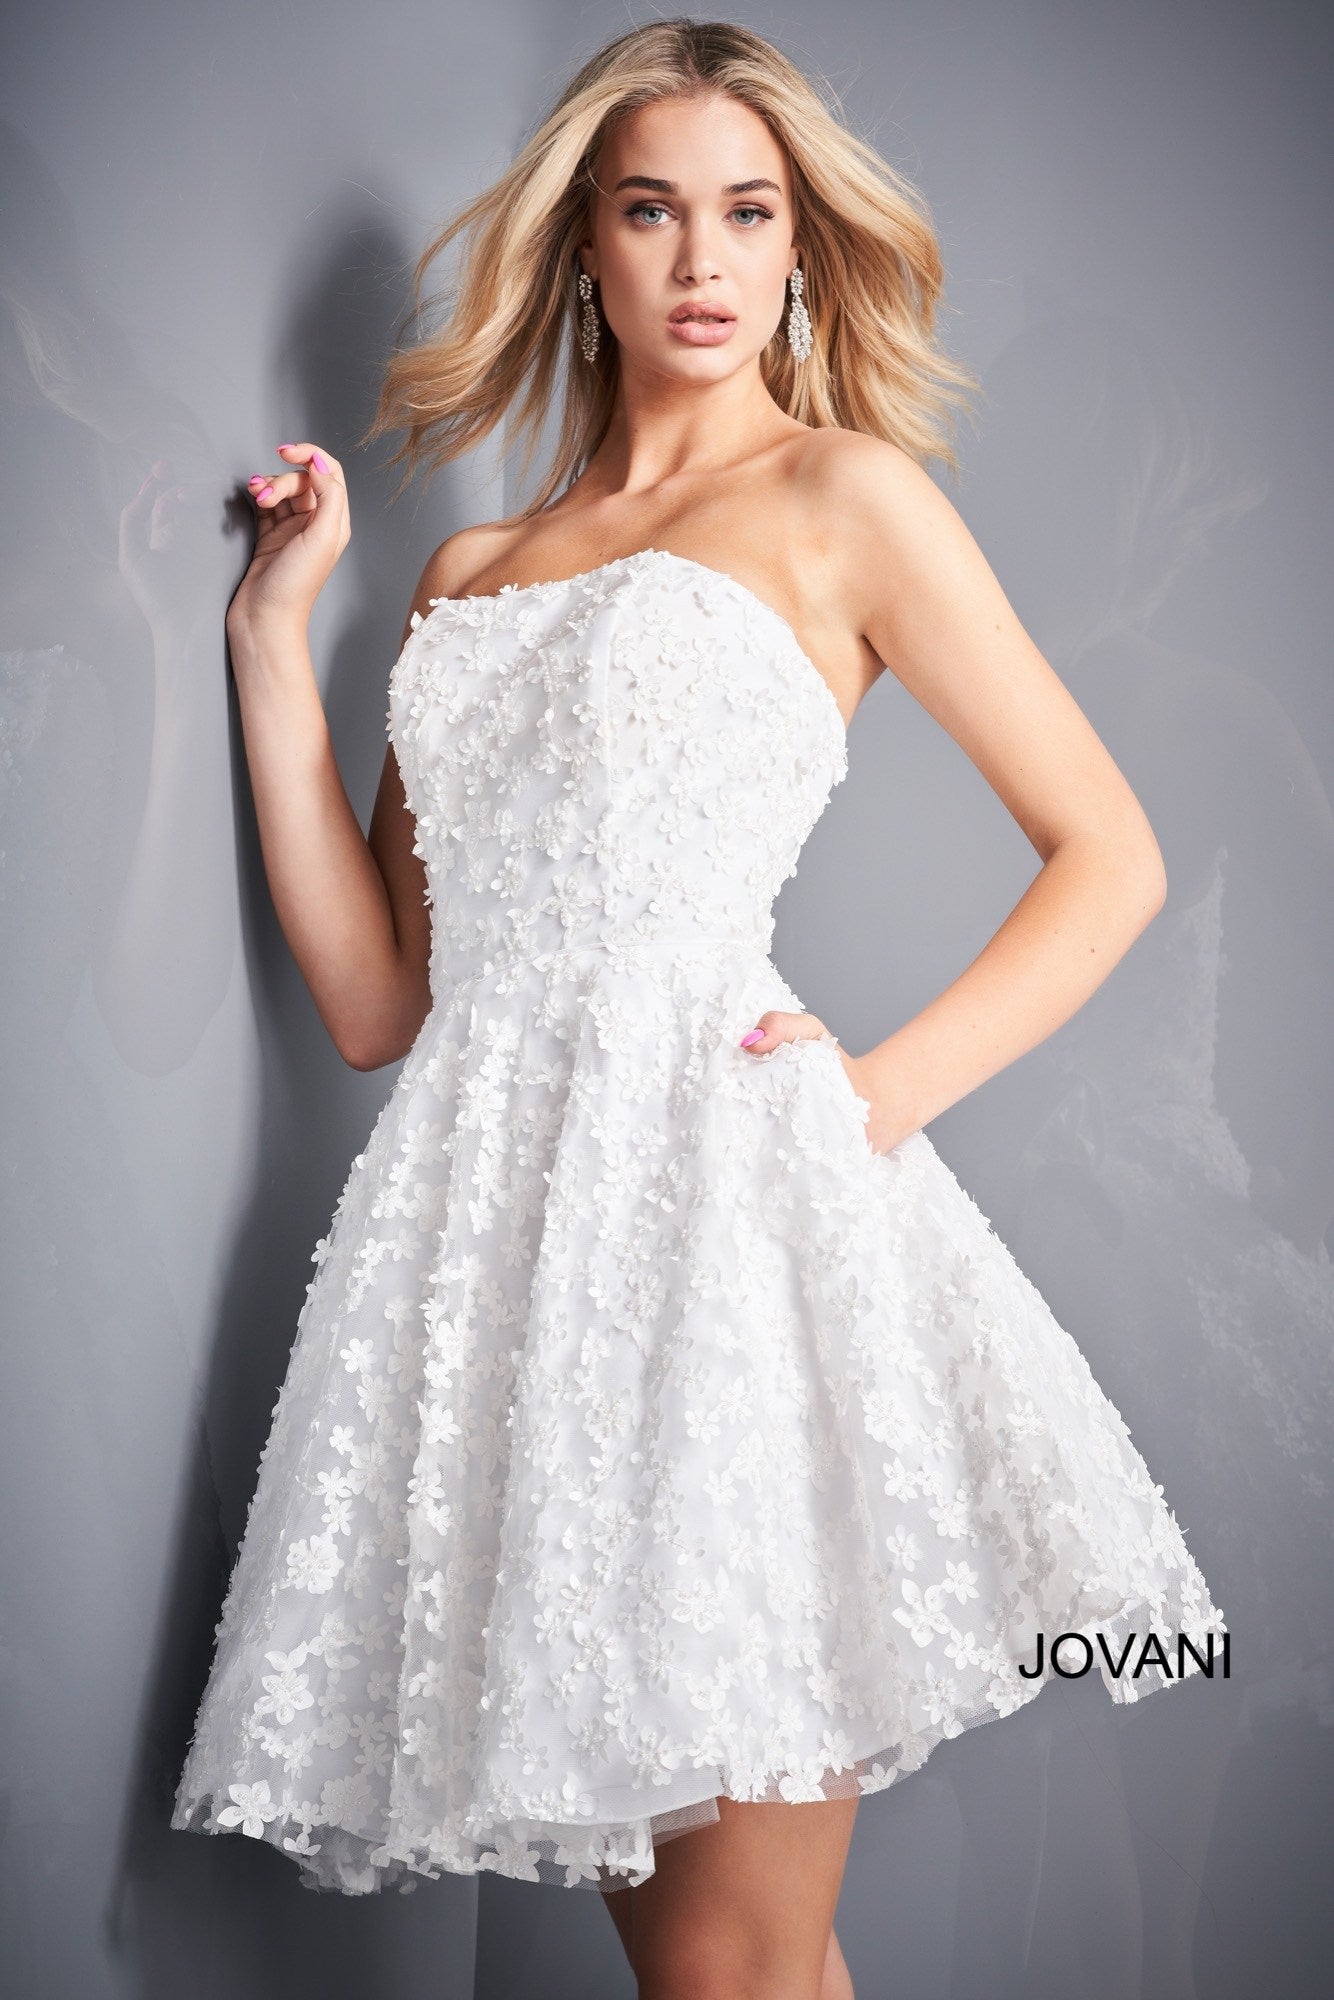 white flower dress